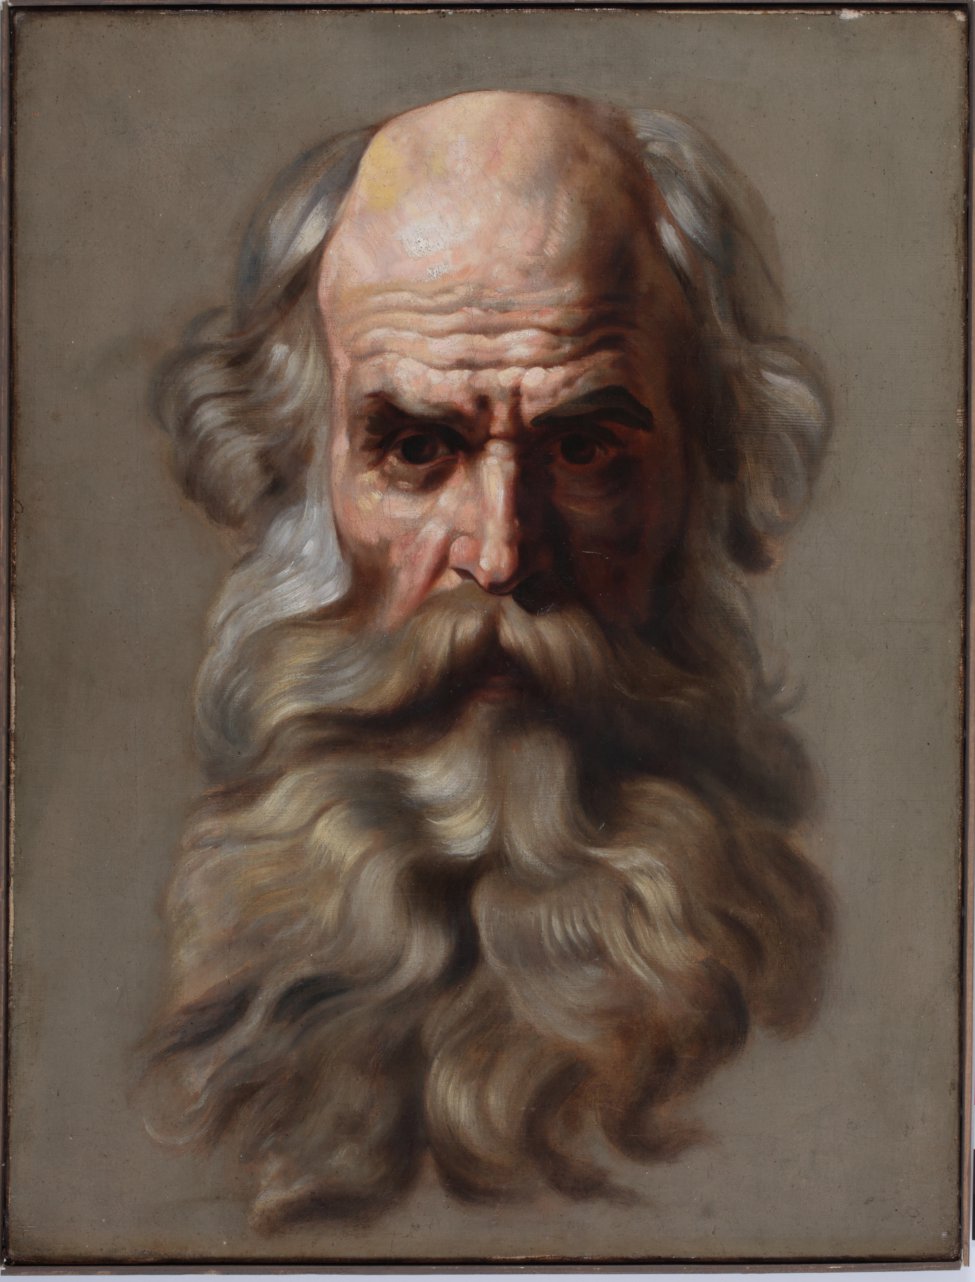 Изображает на сером фоне голову седого старика с длинными волосами и большой бородой. Голова лысая, лоб в глубоких морщинах, лицо обращено прямо, его правая сторона (от зрителя) в тени.